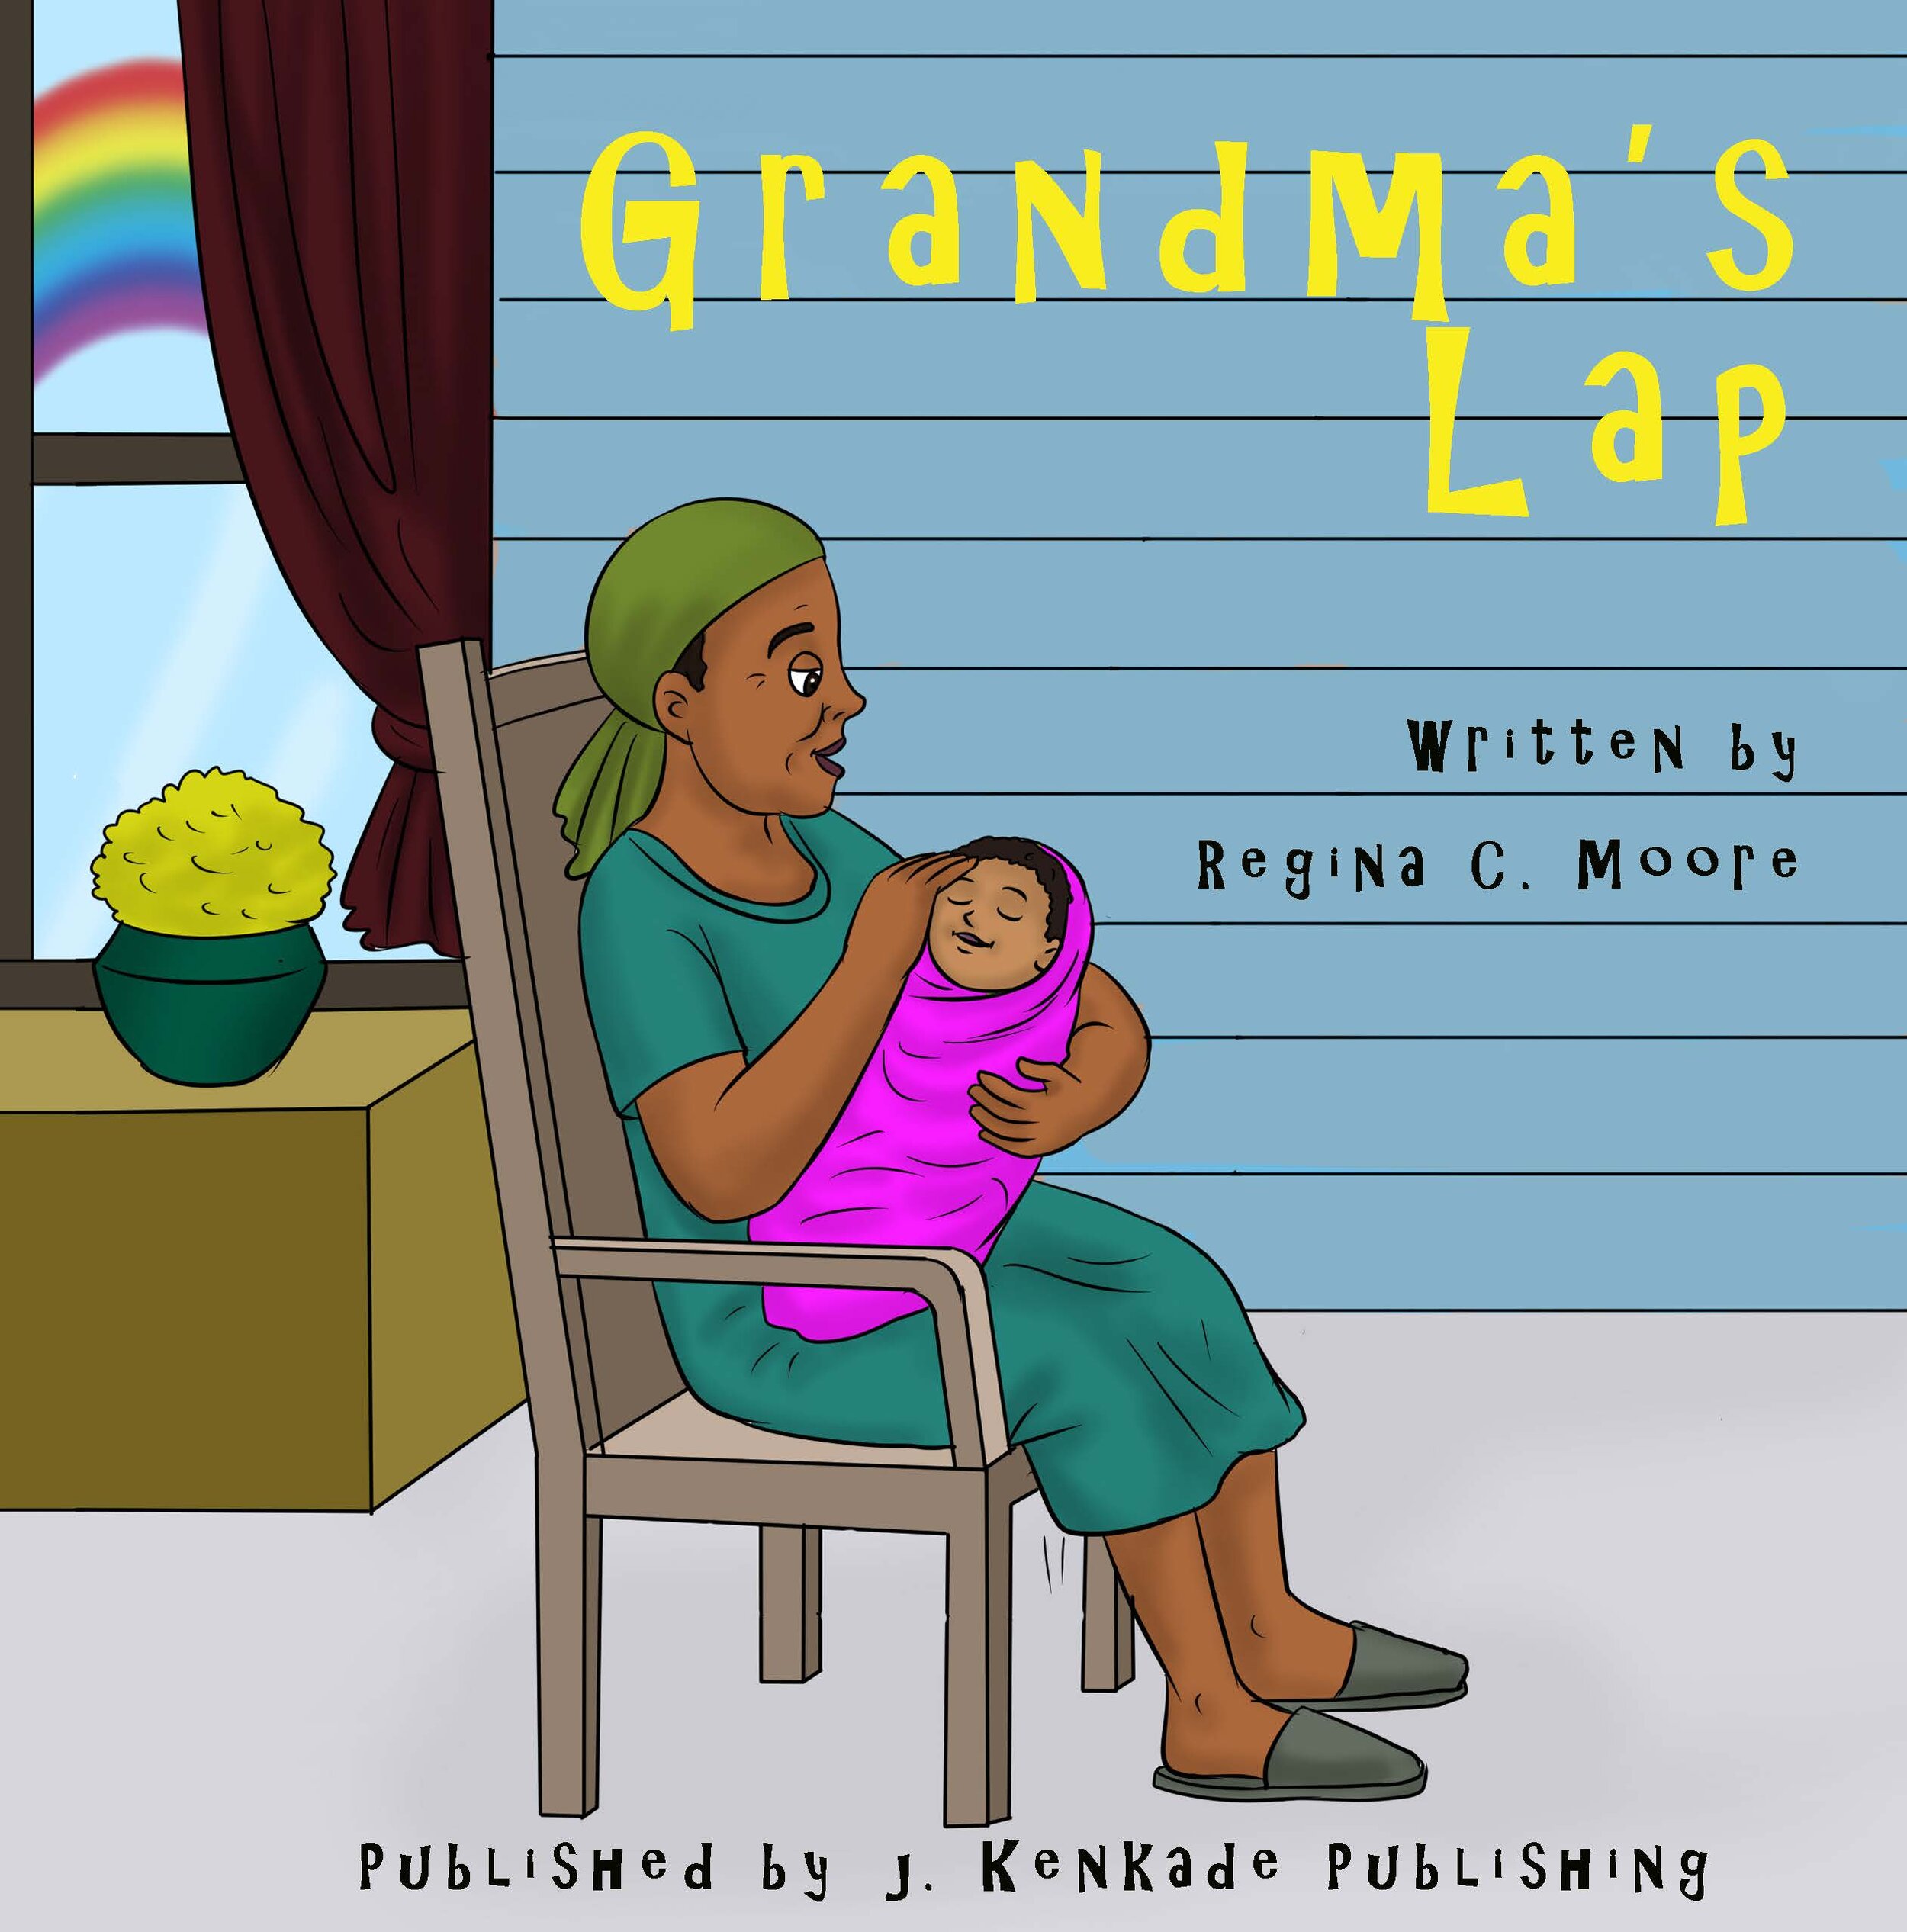 Cover-FRONT Grandma's Lap 2.jpg